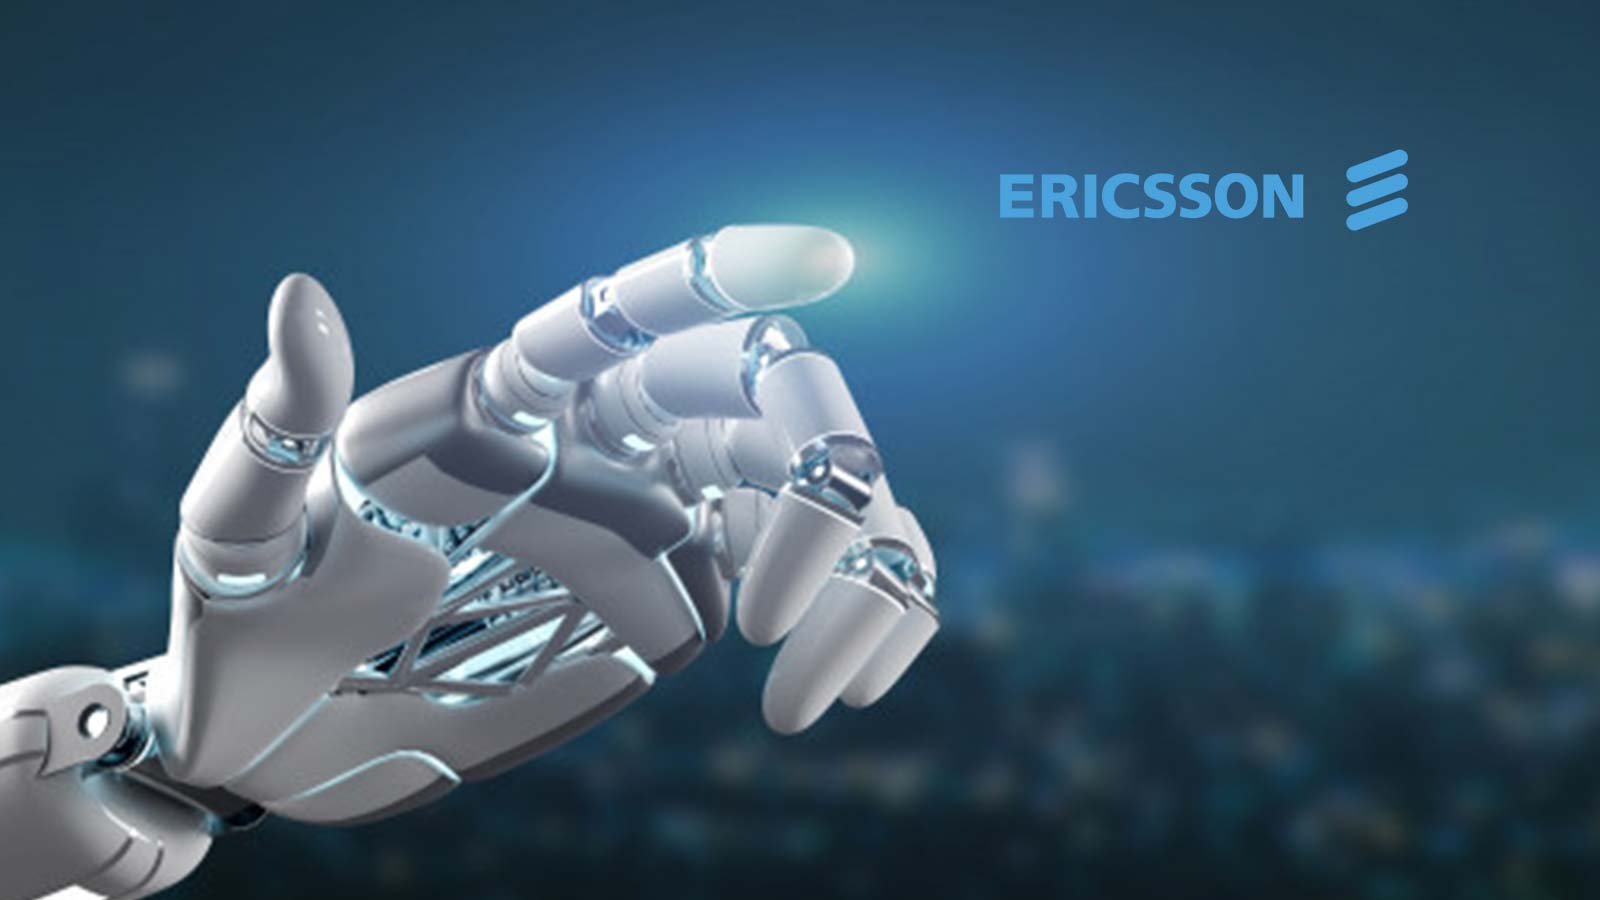 أكثر من 300 مهندس بحث وتطوير في إريكسون يعملون في مجال الذكاء الاصطناعي